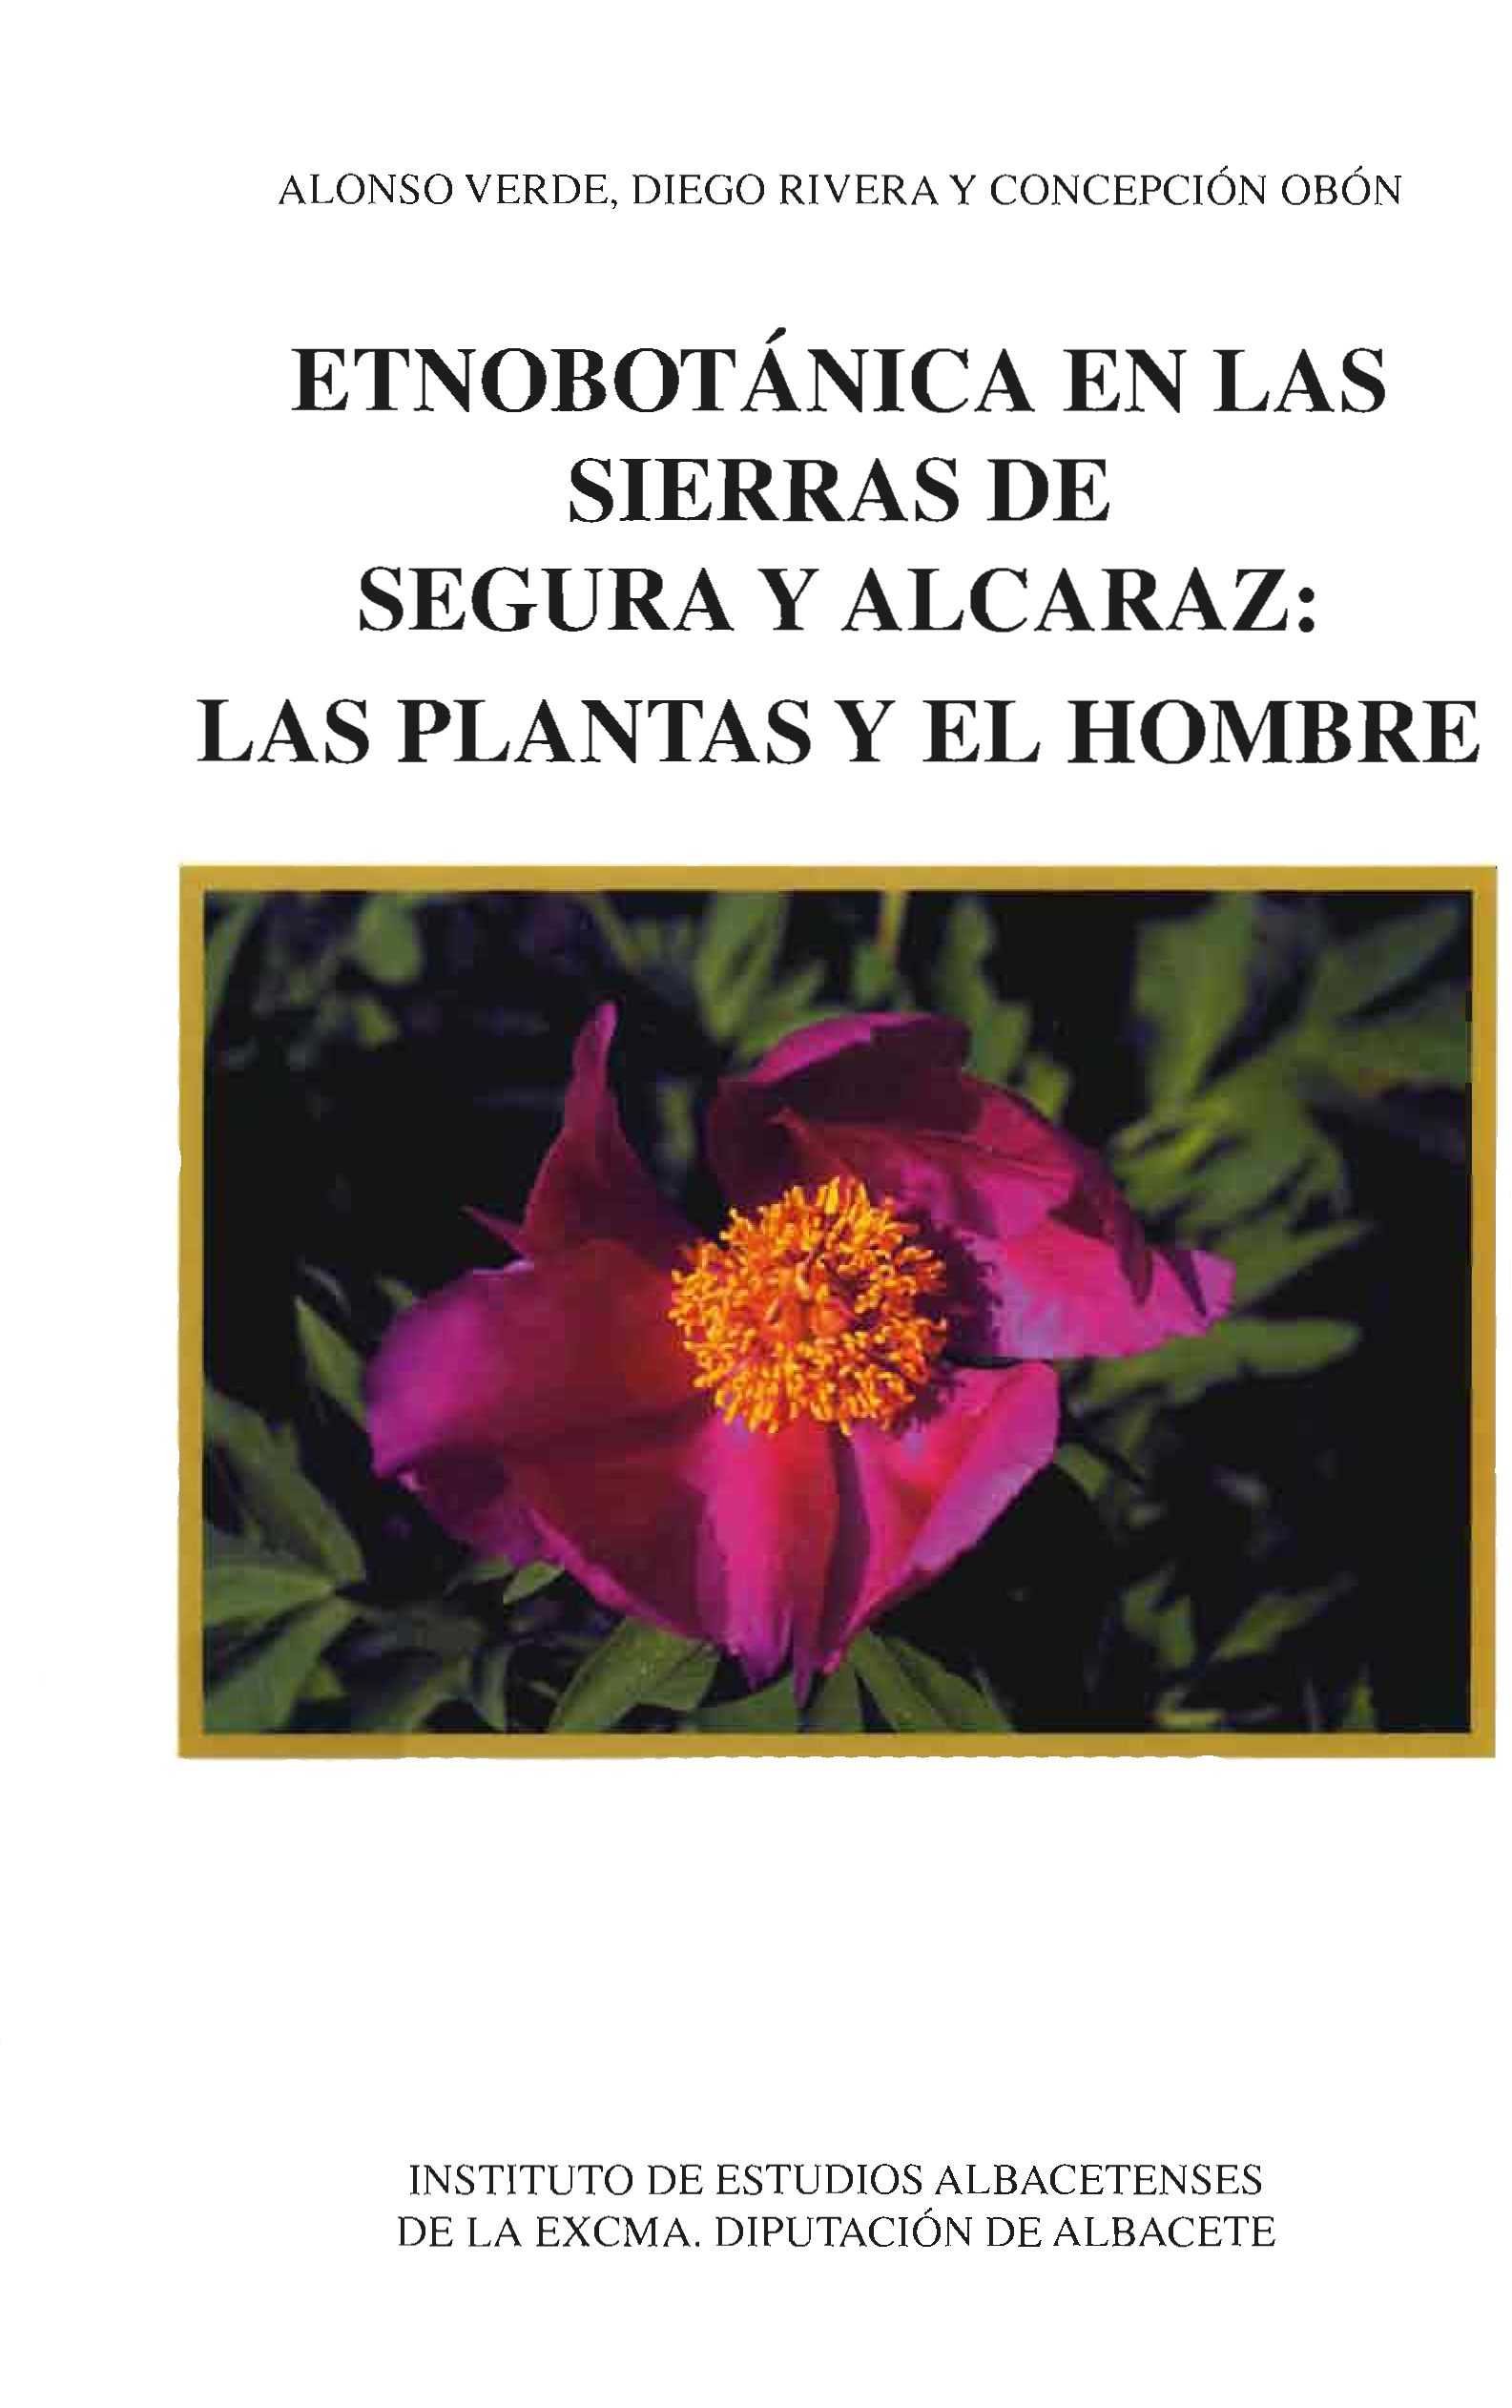 Imagen de portada del libro Etnobotánica en las sierras de Segura y Alcaraz